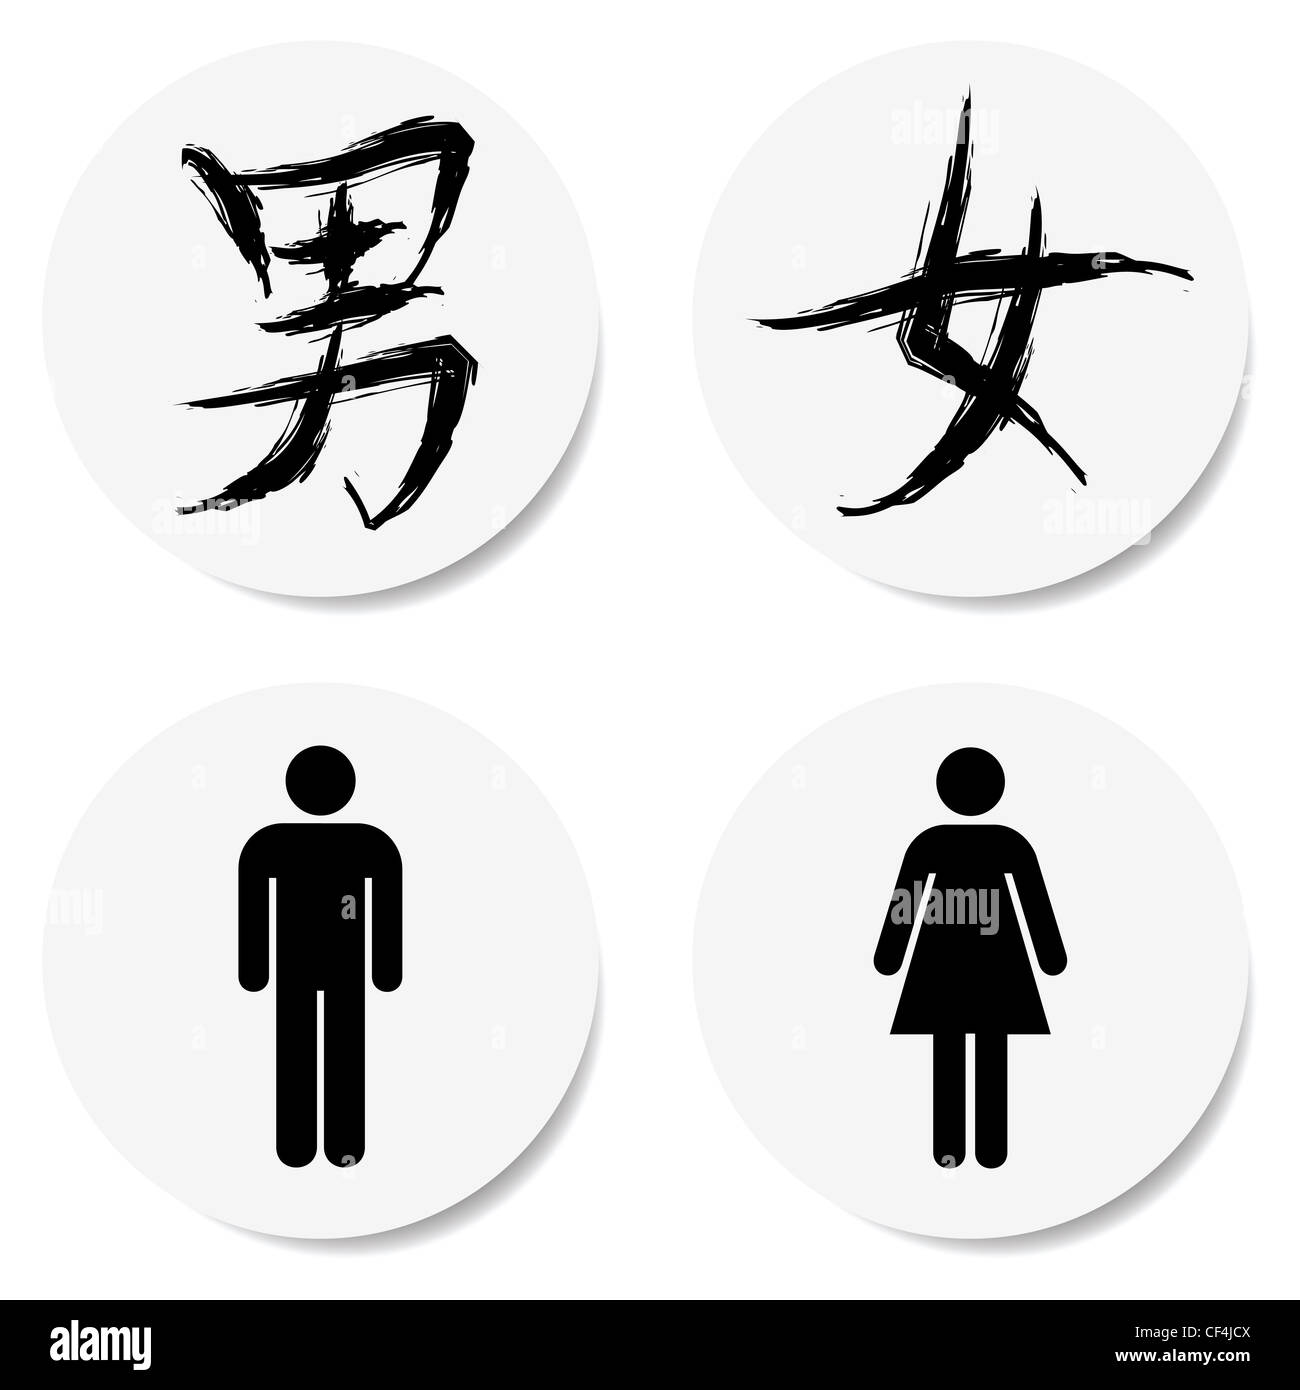 Toilettes signe avec caractère chinois, une vignette adhésive Photo Stock -  Alamy